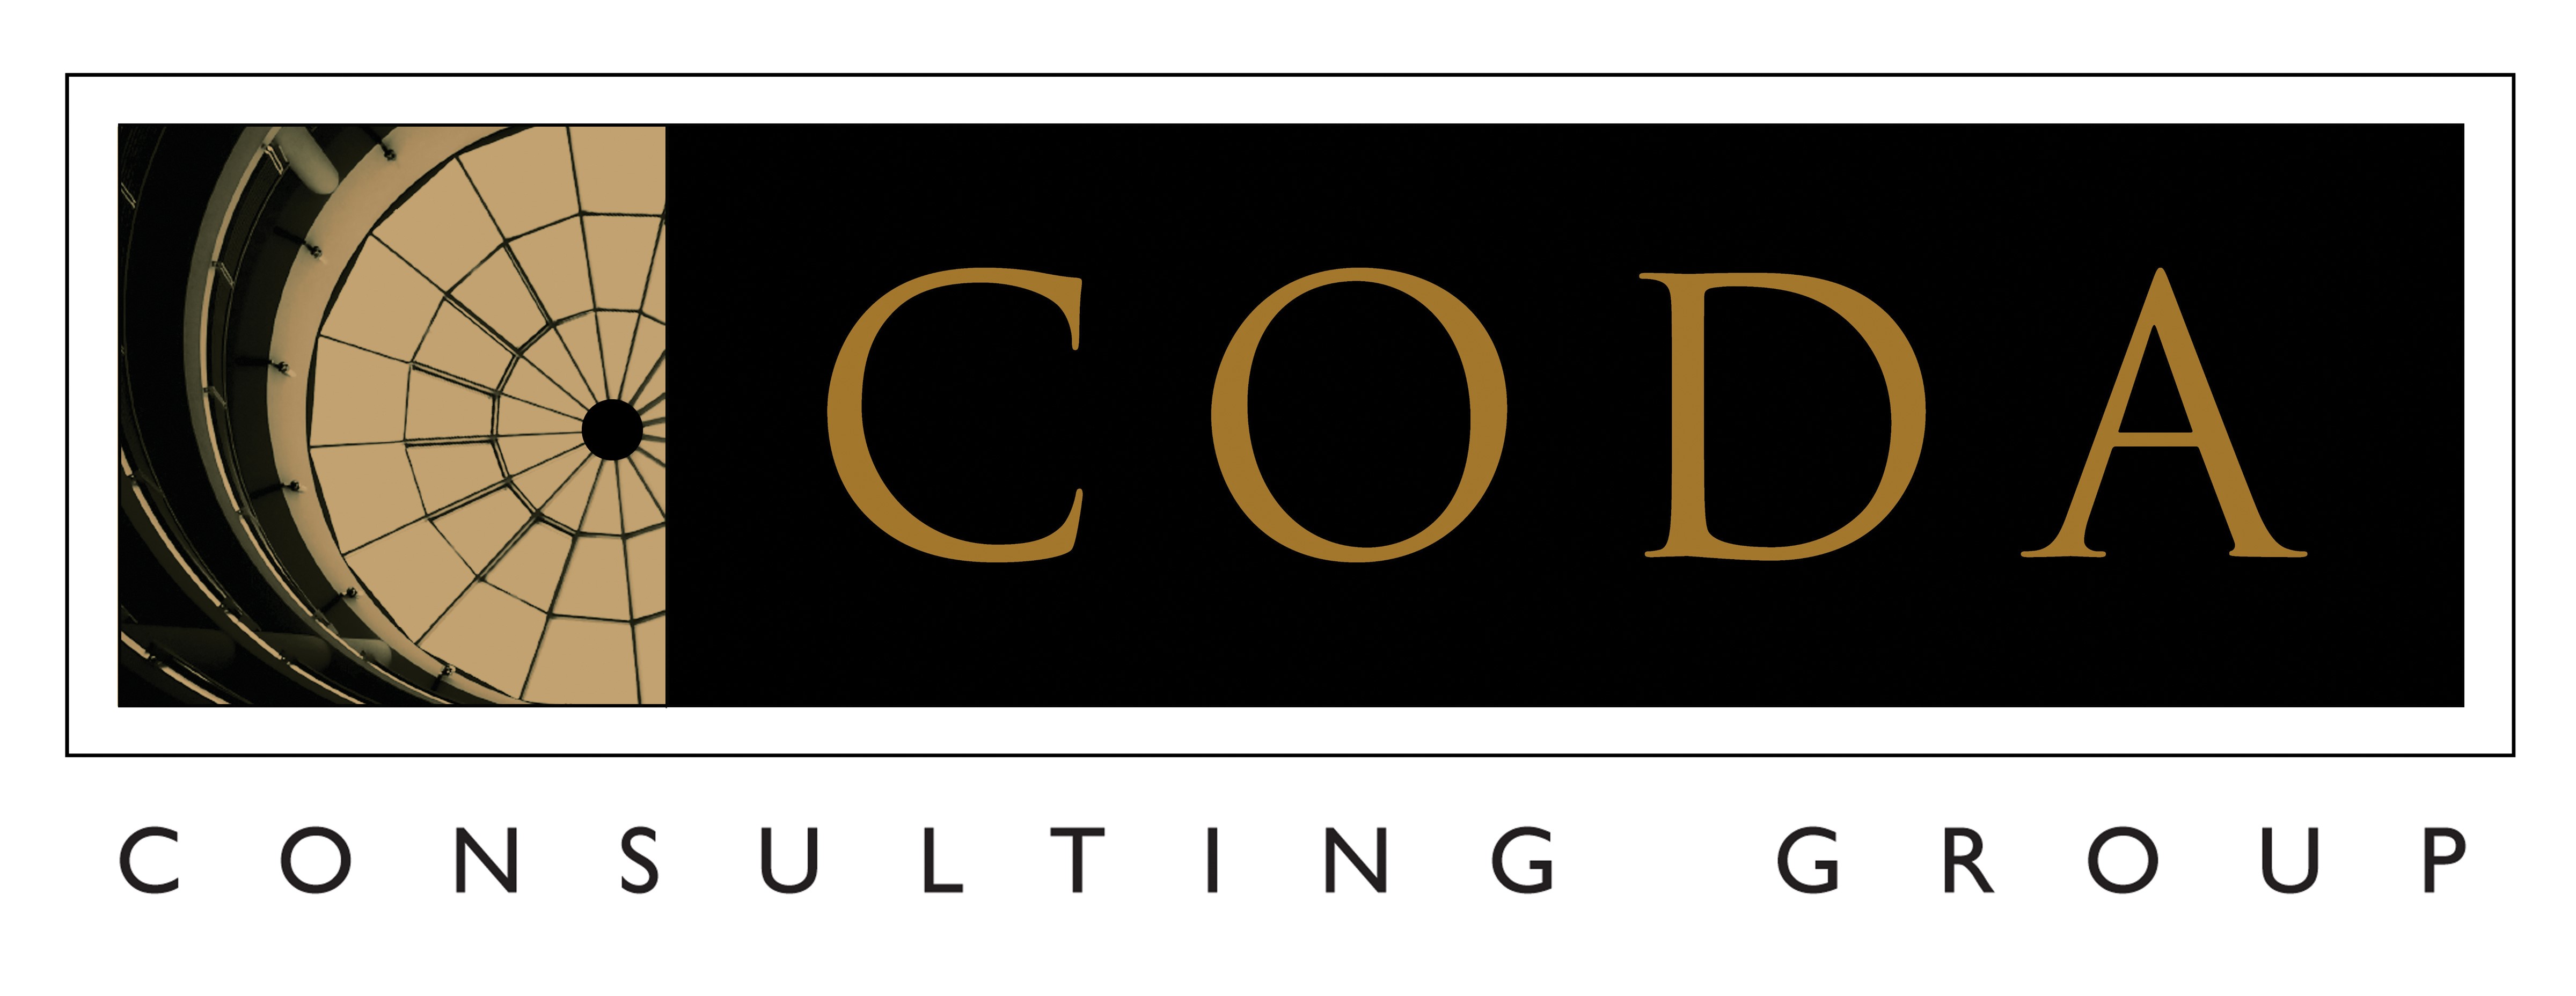 coda consulting group logo